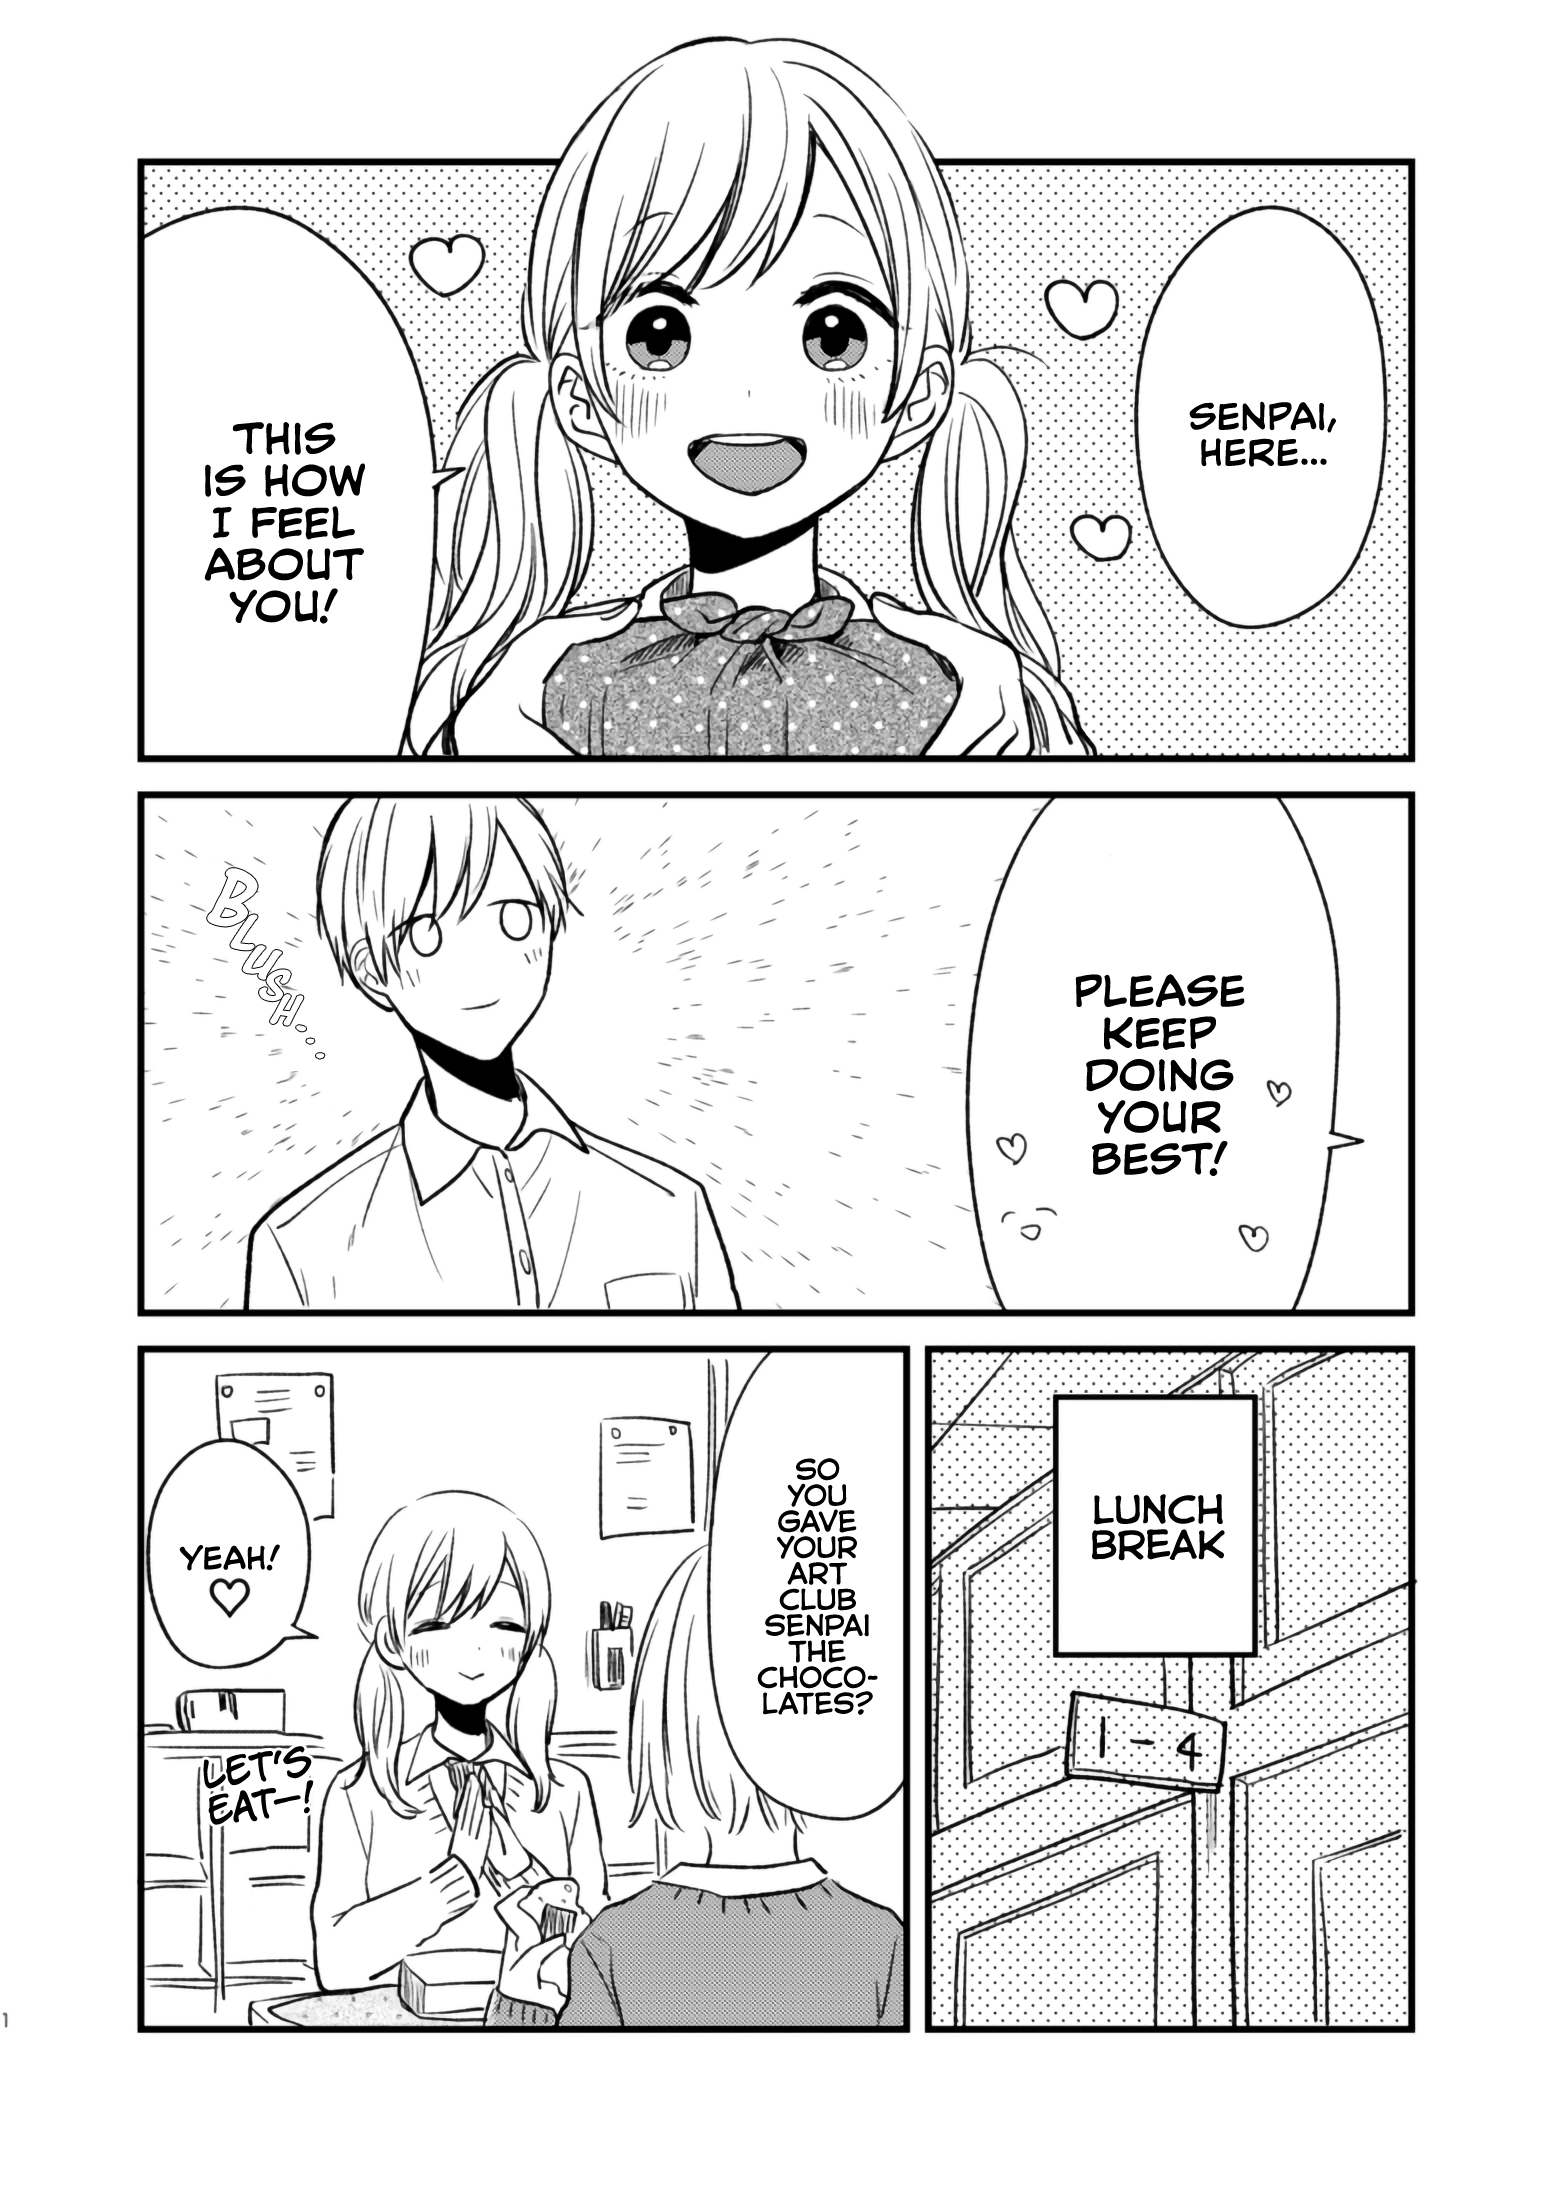 Valentine's Day with Senpai manga